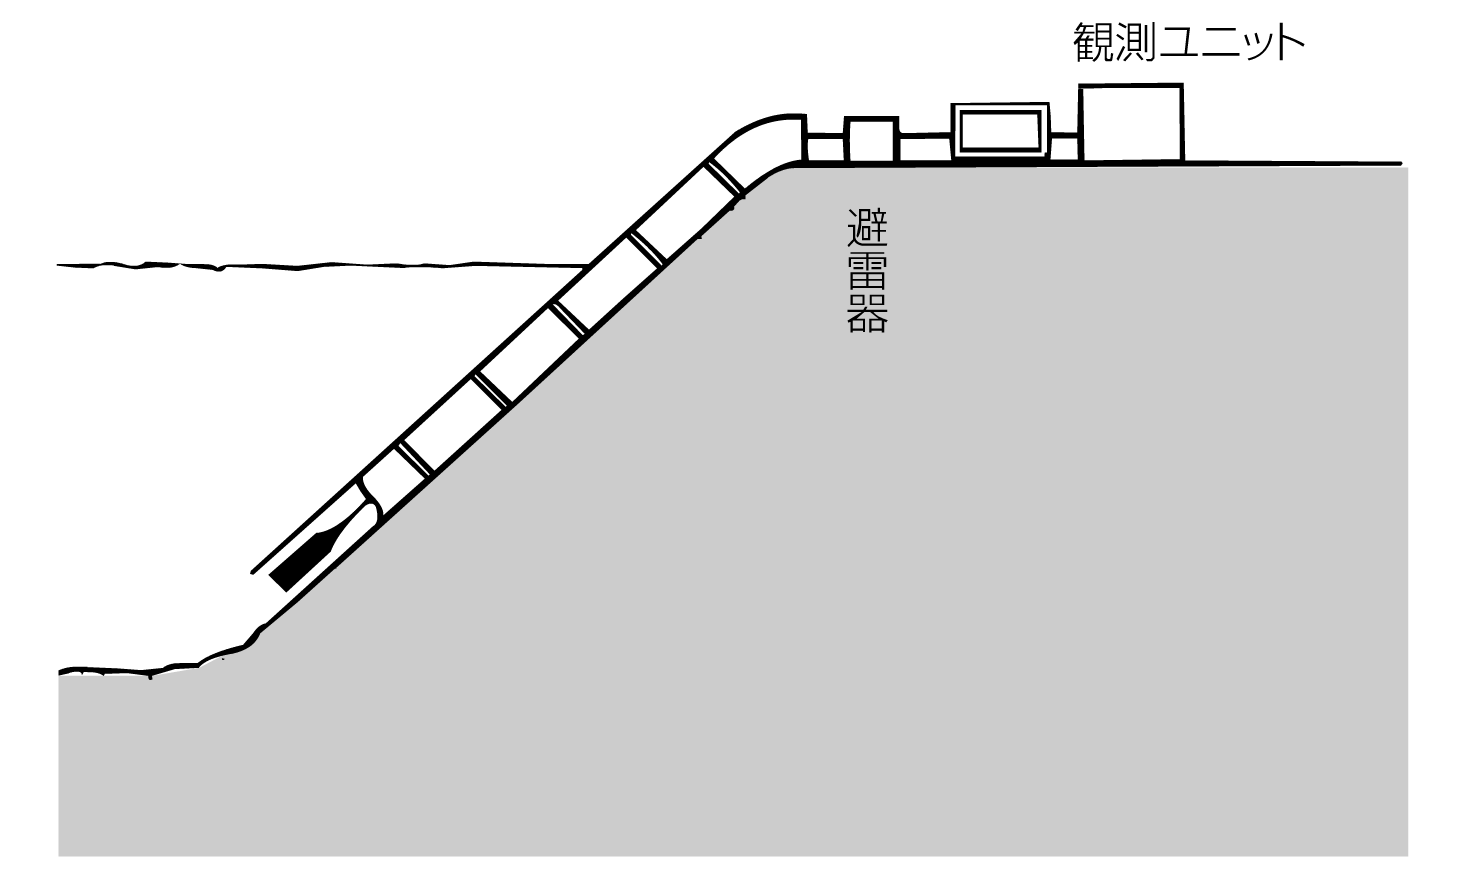 水位計の設置構造図。河川堤防に保護管を付けて斜めに設置